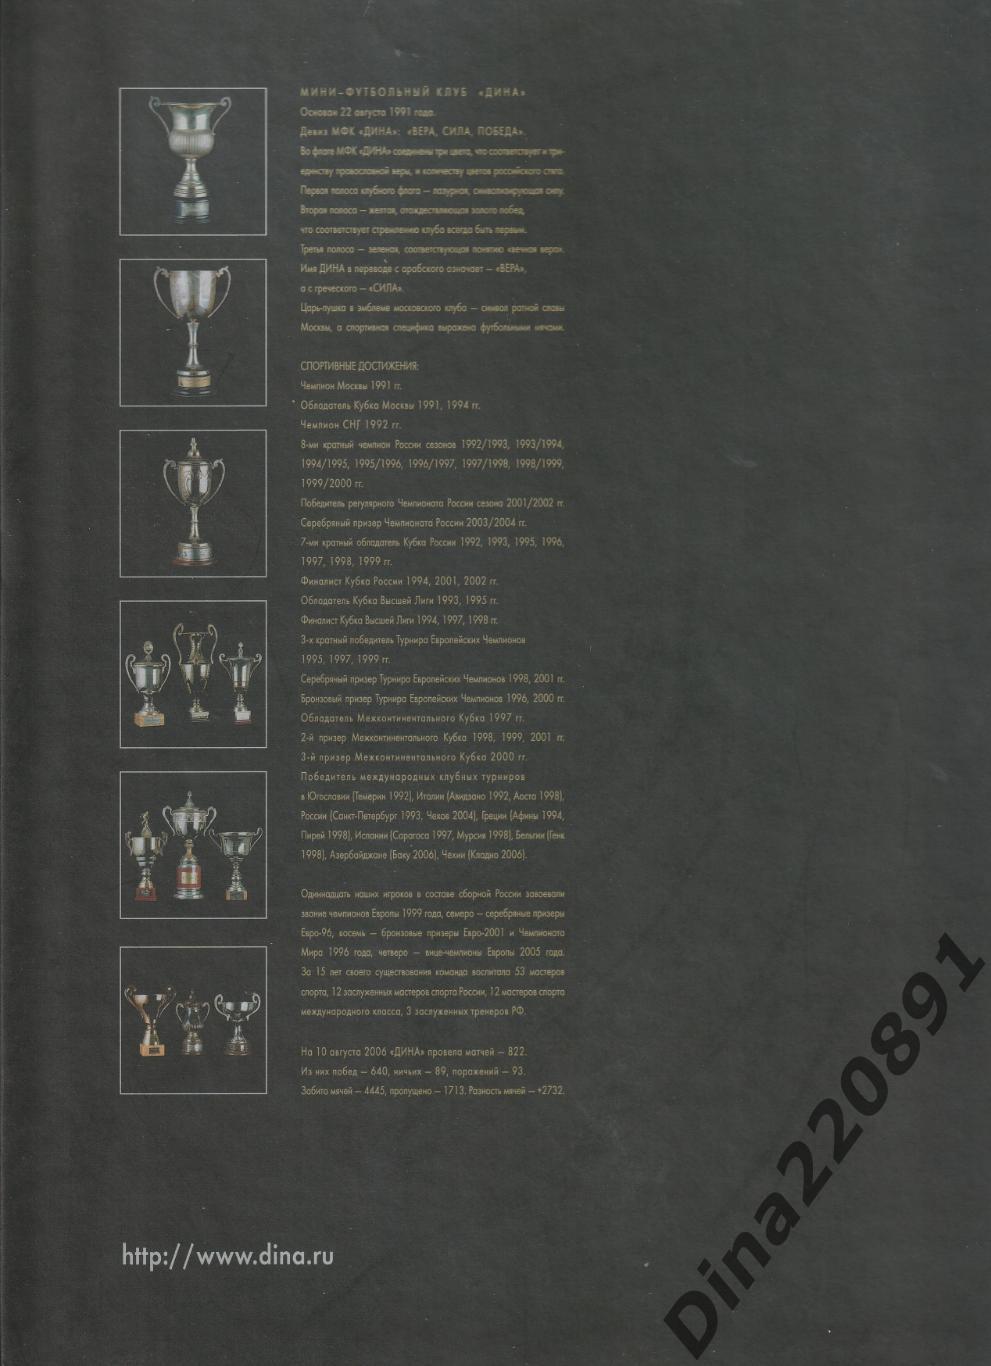 Подарочная книга(юбилейное издание) МФК Дина 15 лет. Издана в 2006г.(раритет) 1